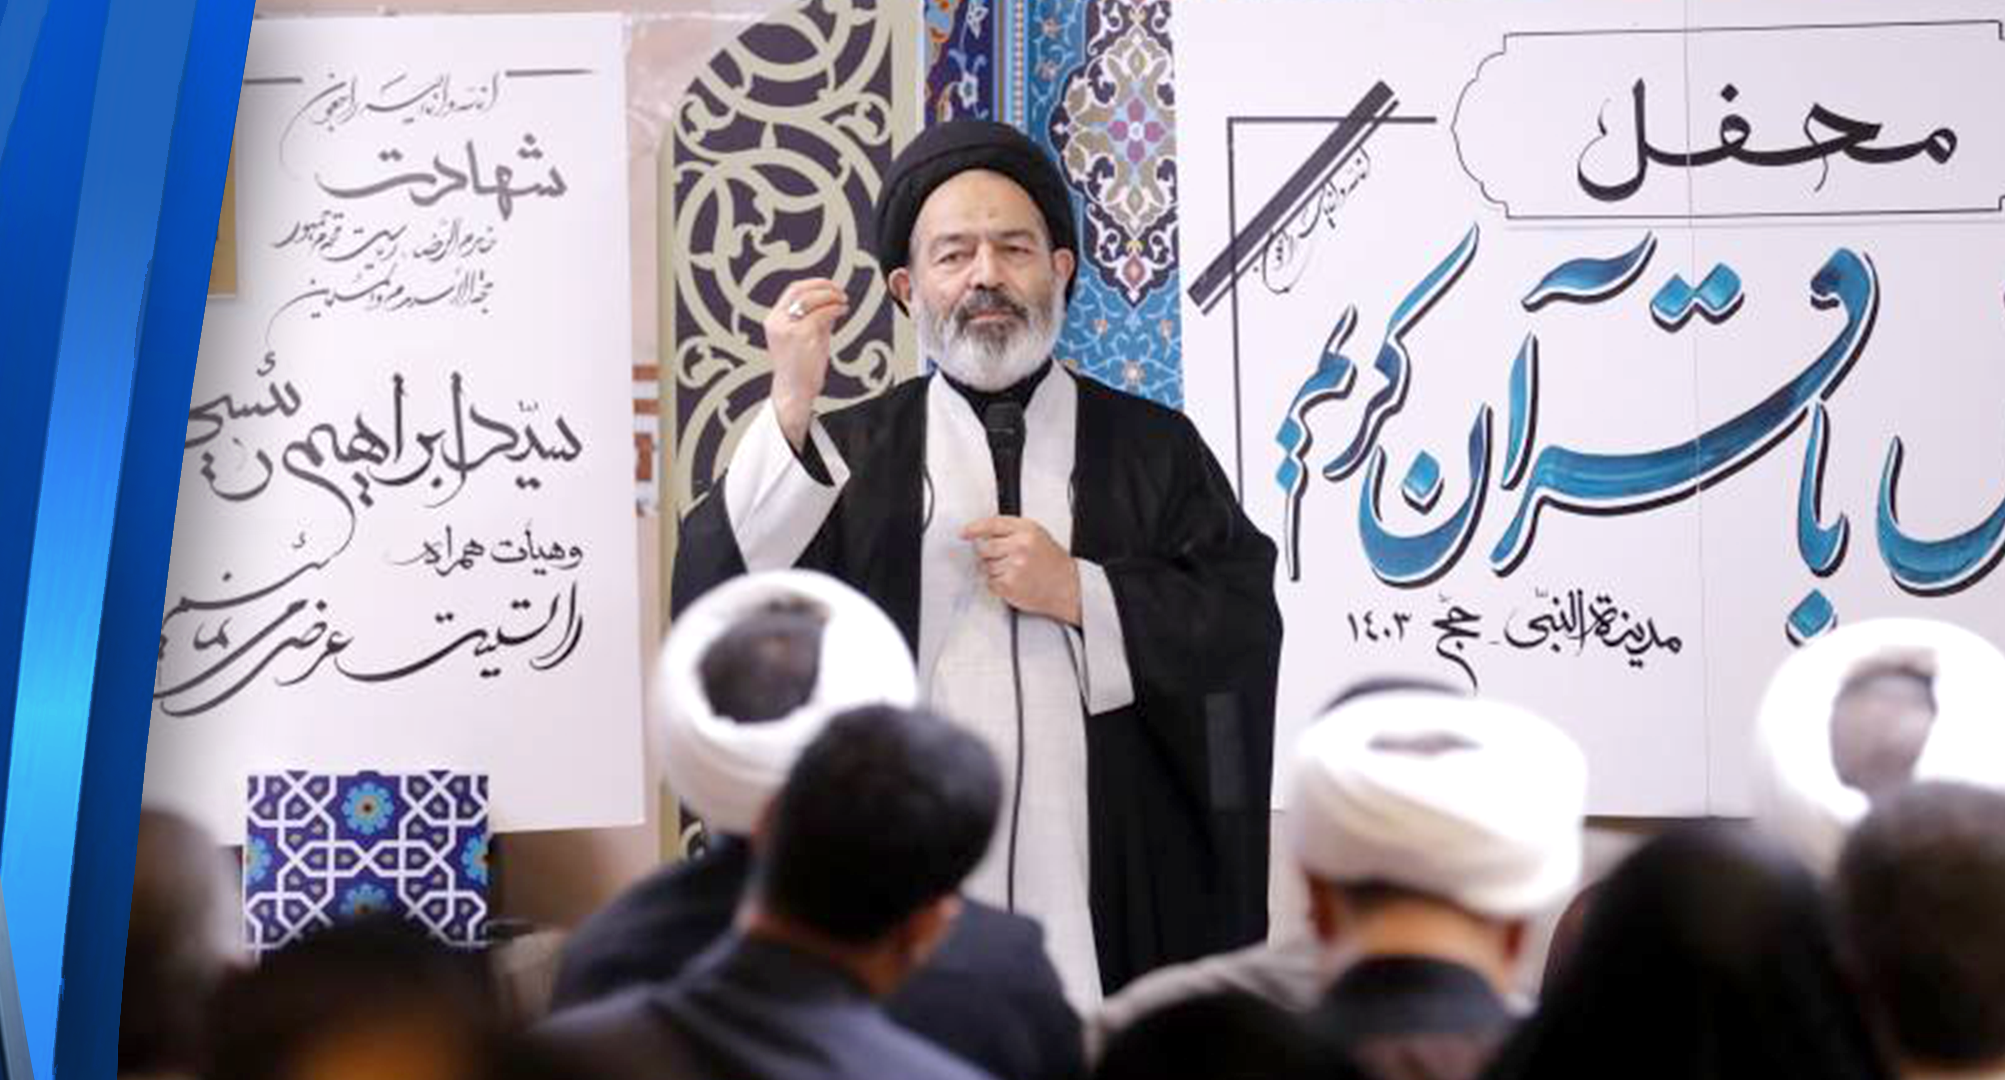 Iranian Hajj pilgrims mourn beloved president, foreign minister